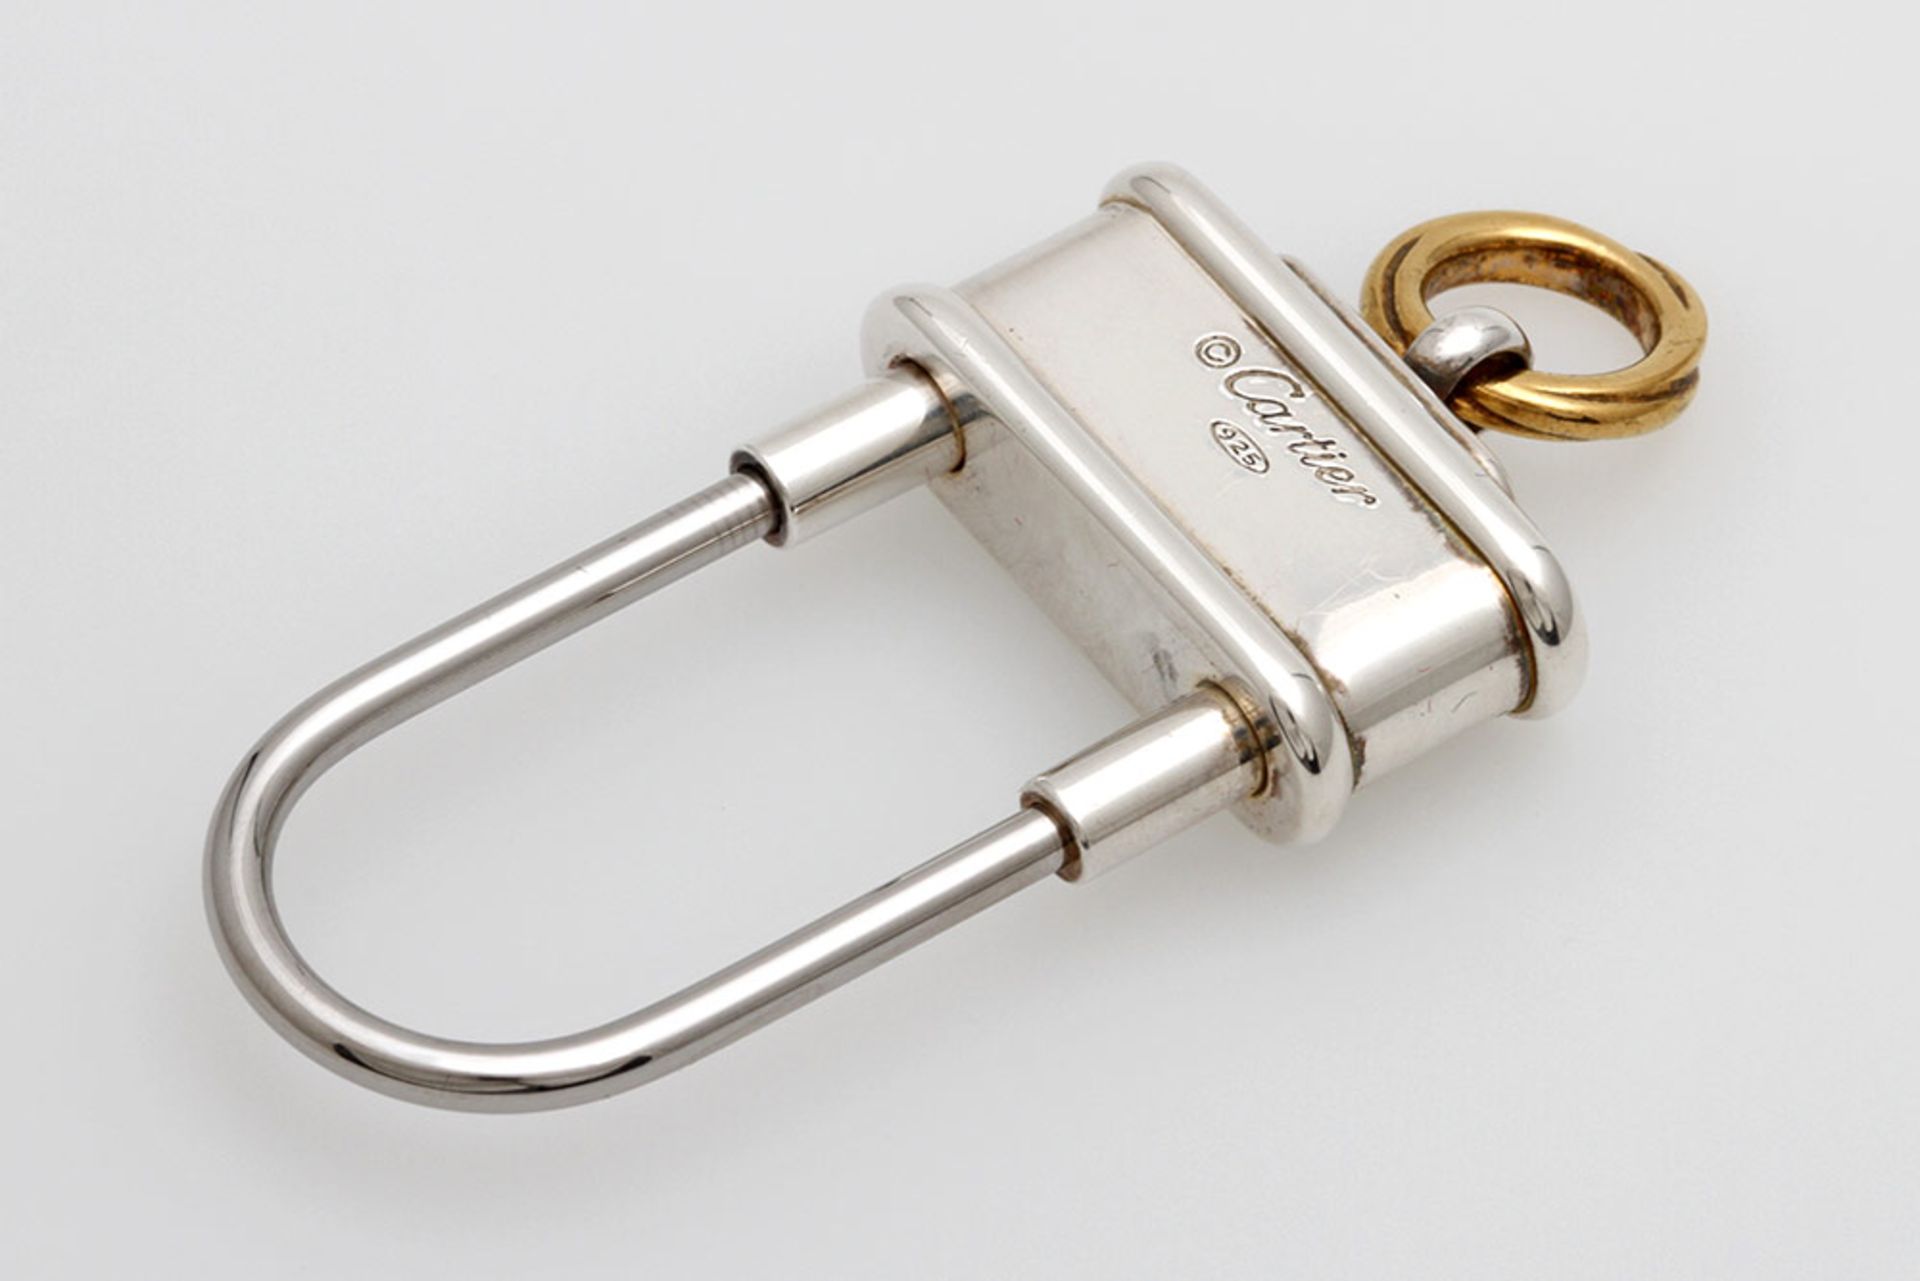 CARTIER Schlüsselanhänger "Decor 3 anneaux" in Form eines Vorhängeschlosses. Silber, Bügel aus